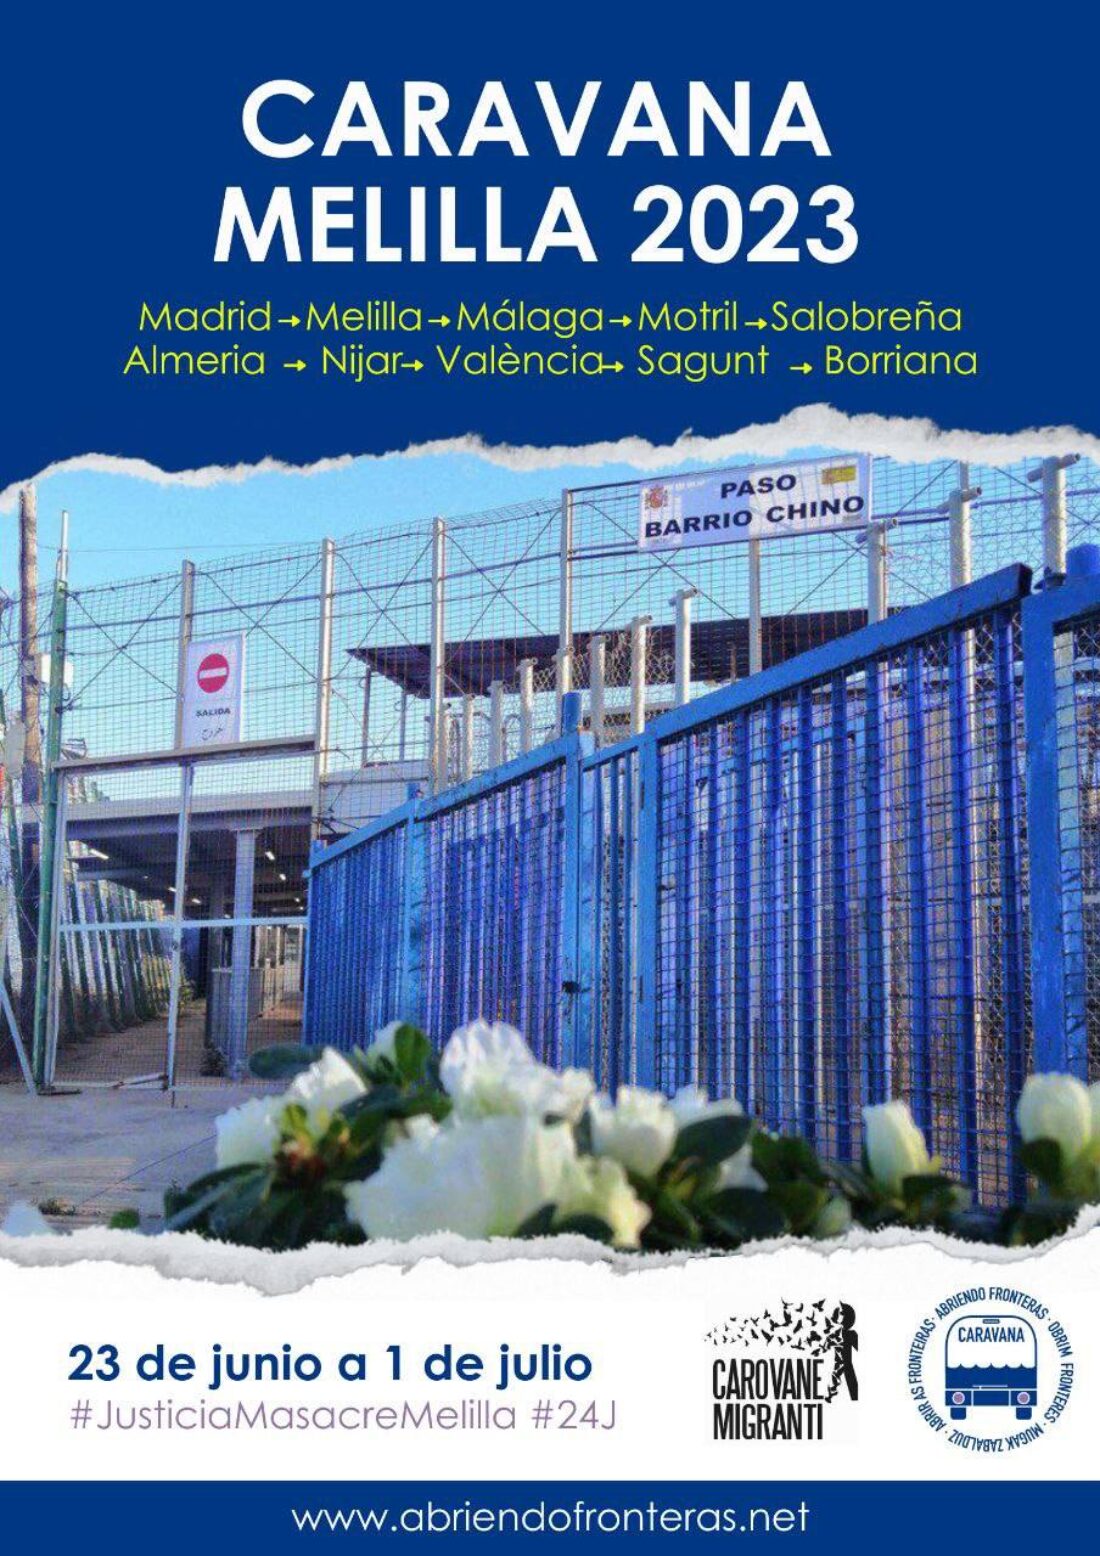 Caravana a Melilla: Inscripciones hasta el 1 de junio